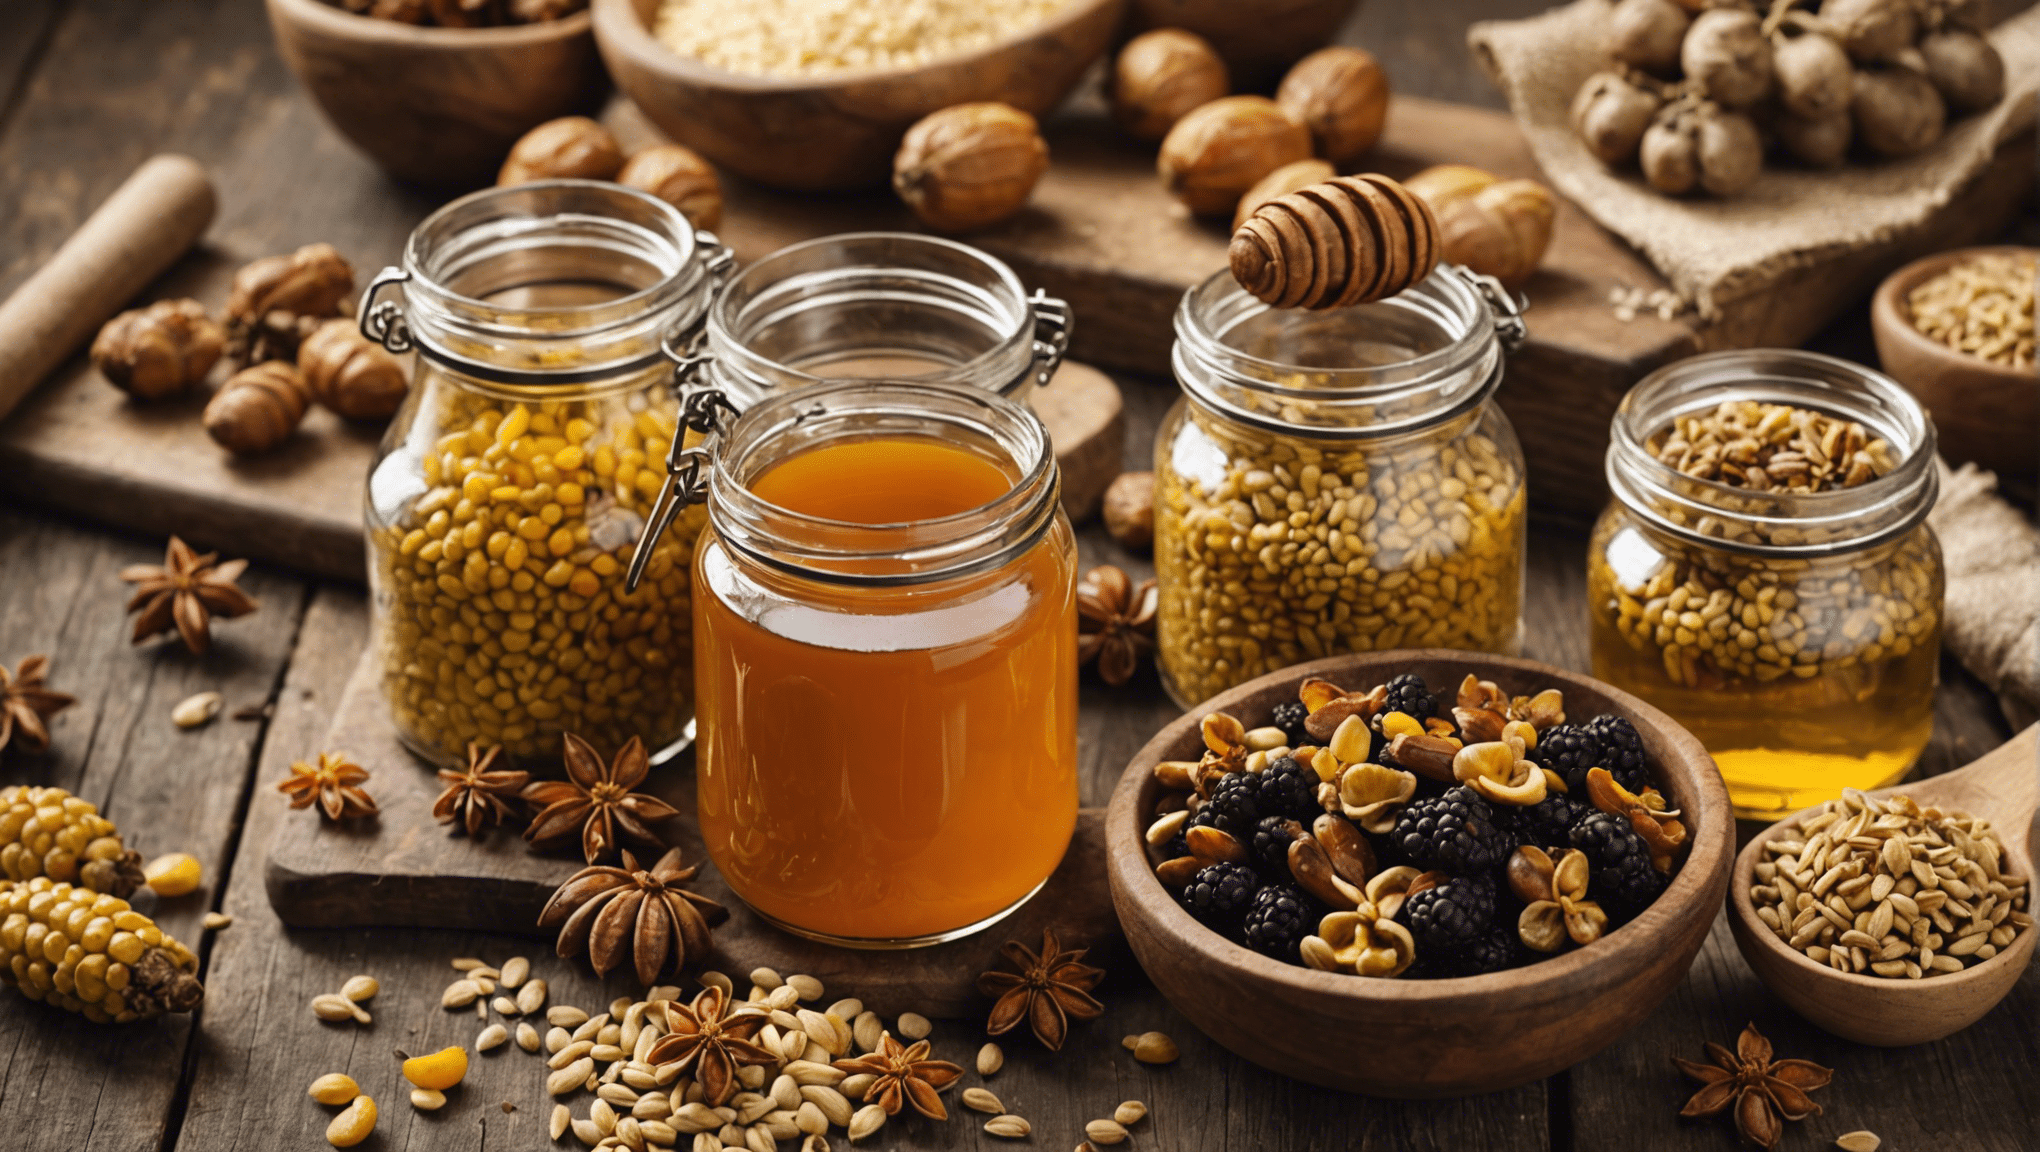 현지 꿀의 독특한 맛을 발견하고 그 특성과 미묘함에 대해 자세히 알아보세요. 전통과 진정성이 풍부한 맛 탐험을 즐겨보세요.